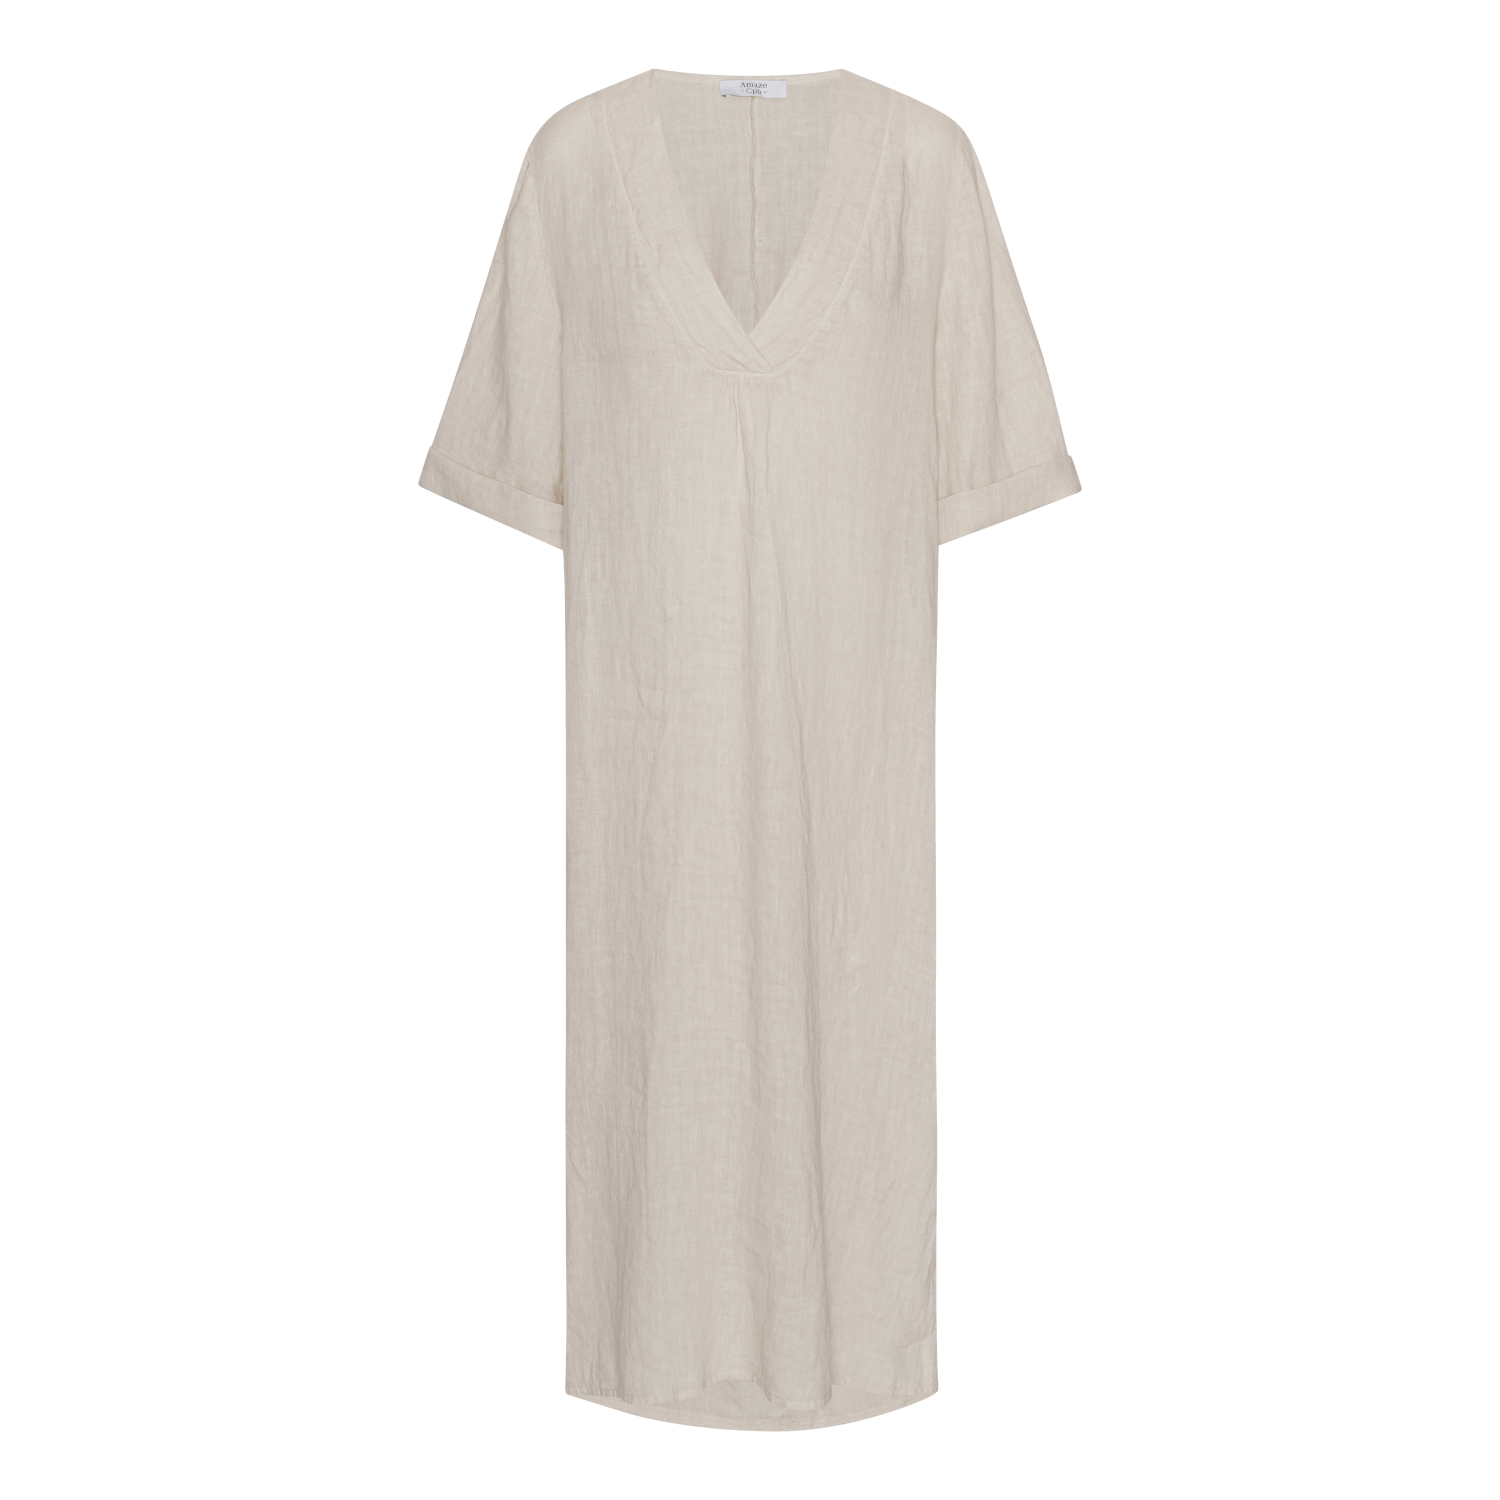 Linen Dress - Sand - Amaze Cph - Sand - S/M